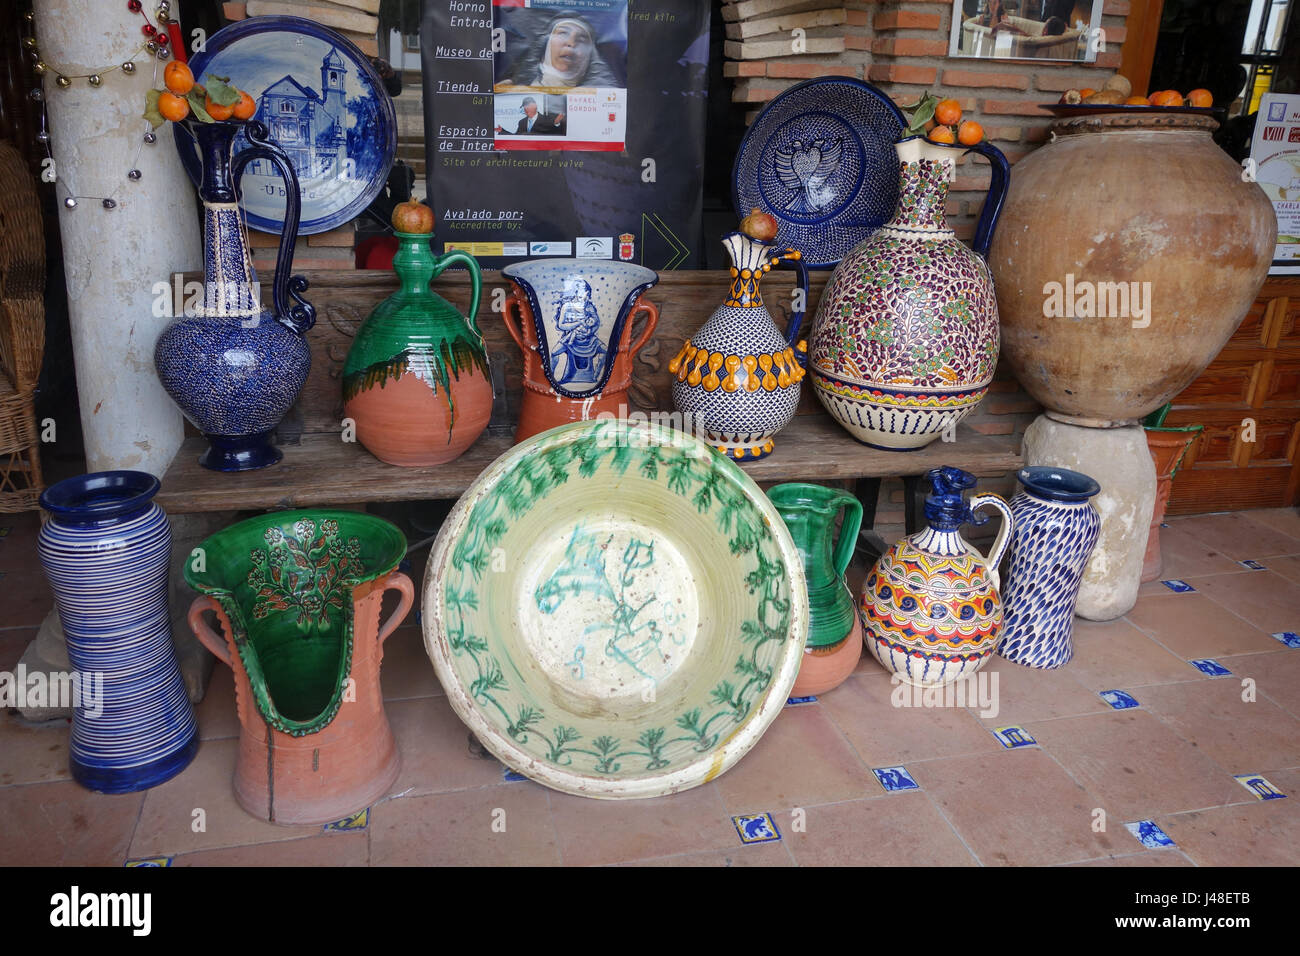 La céramique espagnole en vente dans Ubeda en Andalousie Espagne Banque D'Images